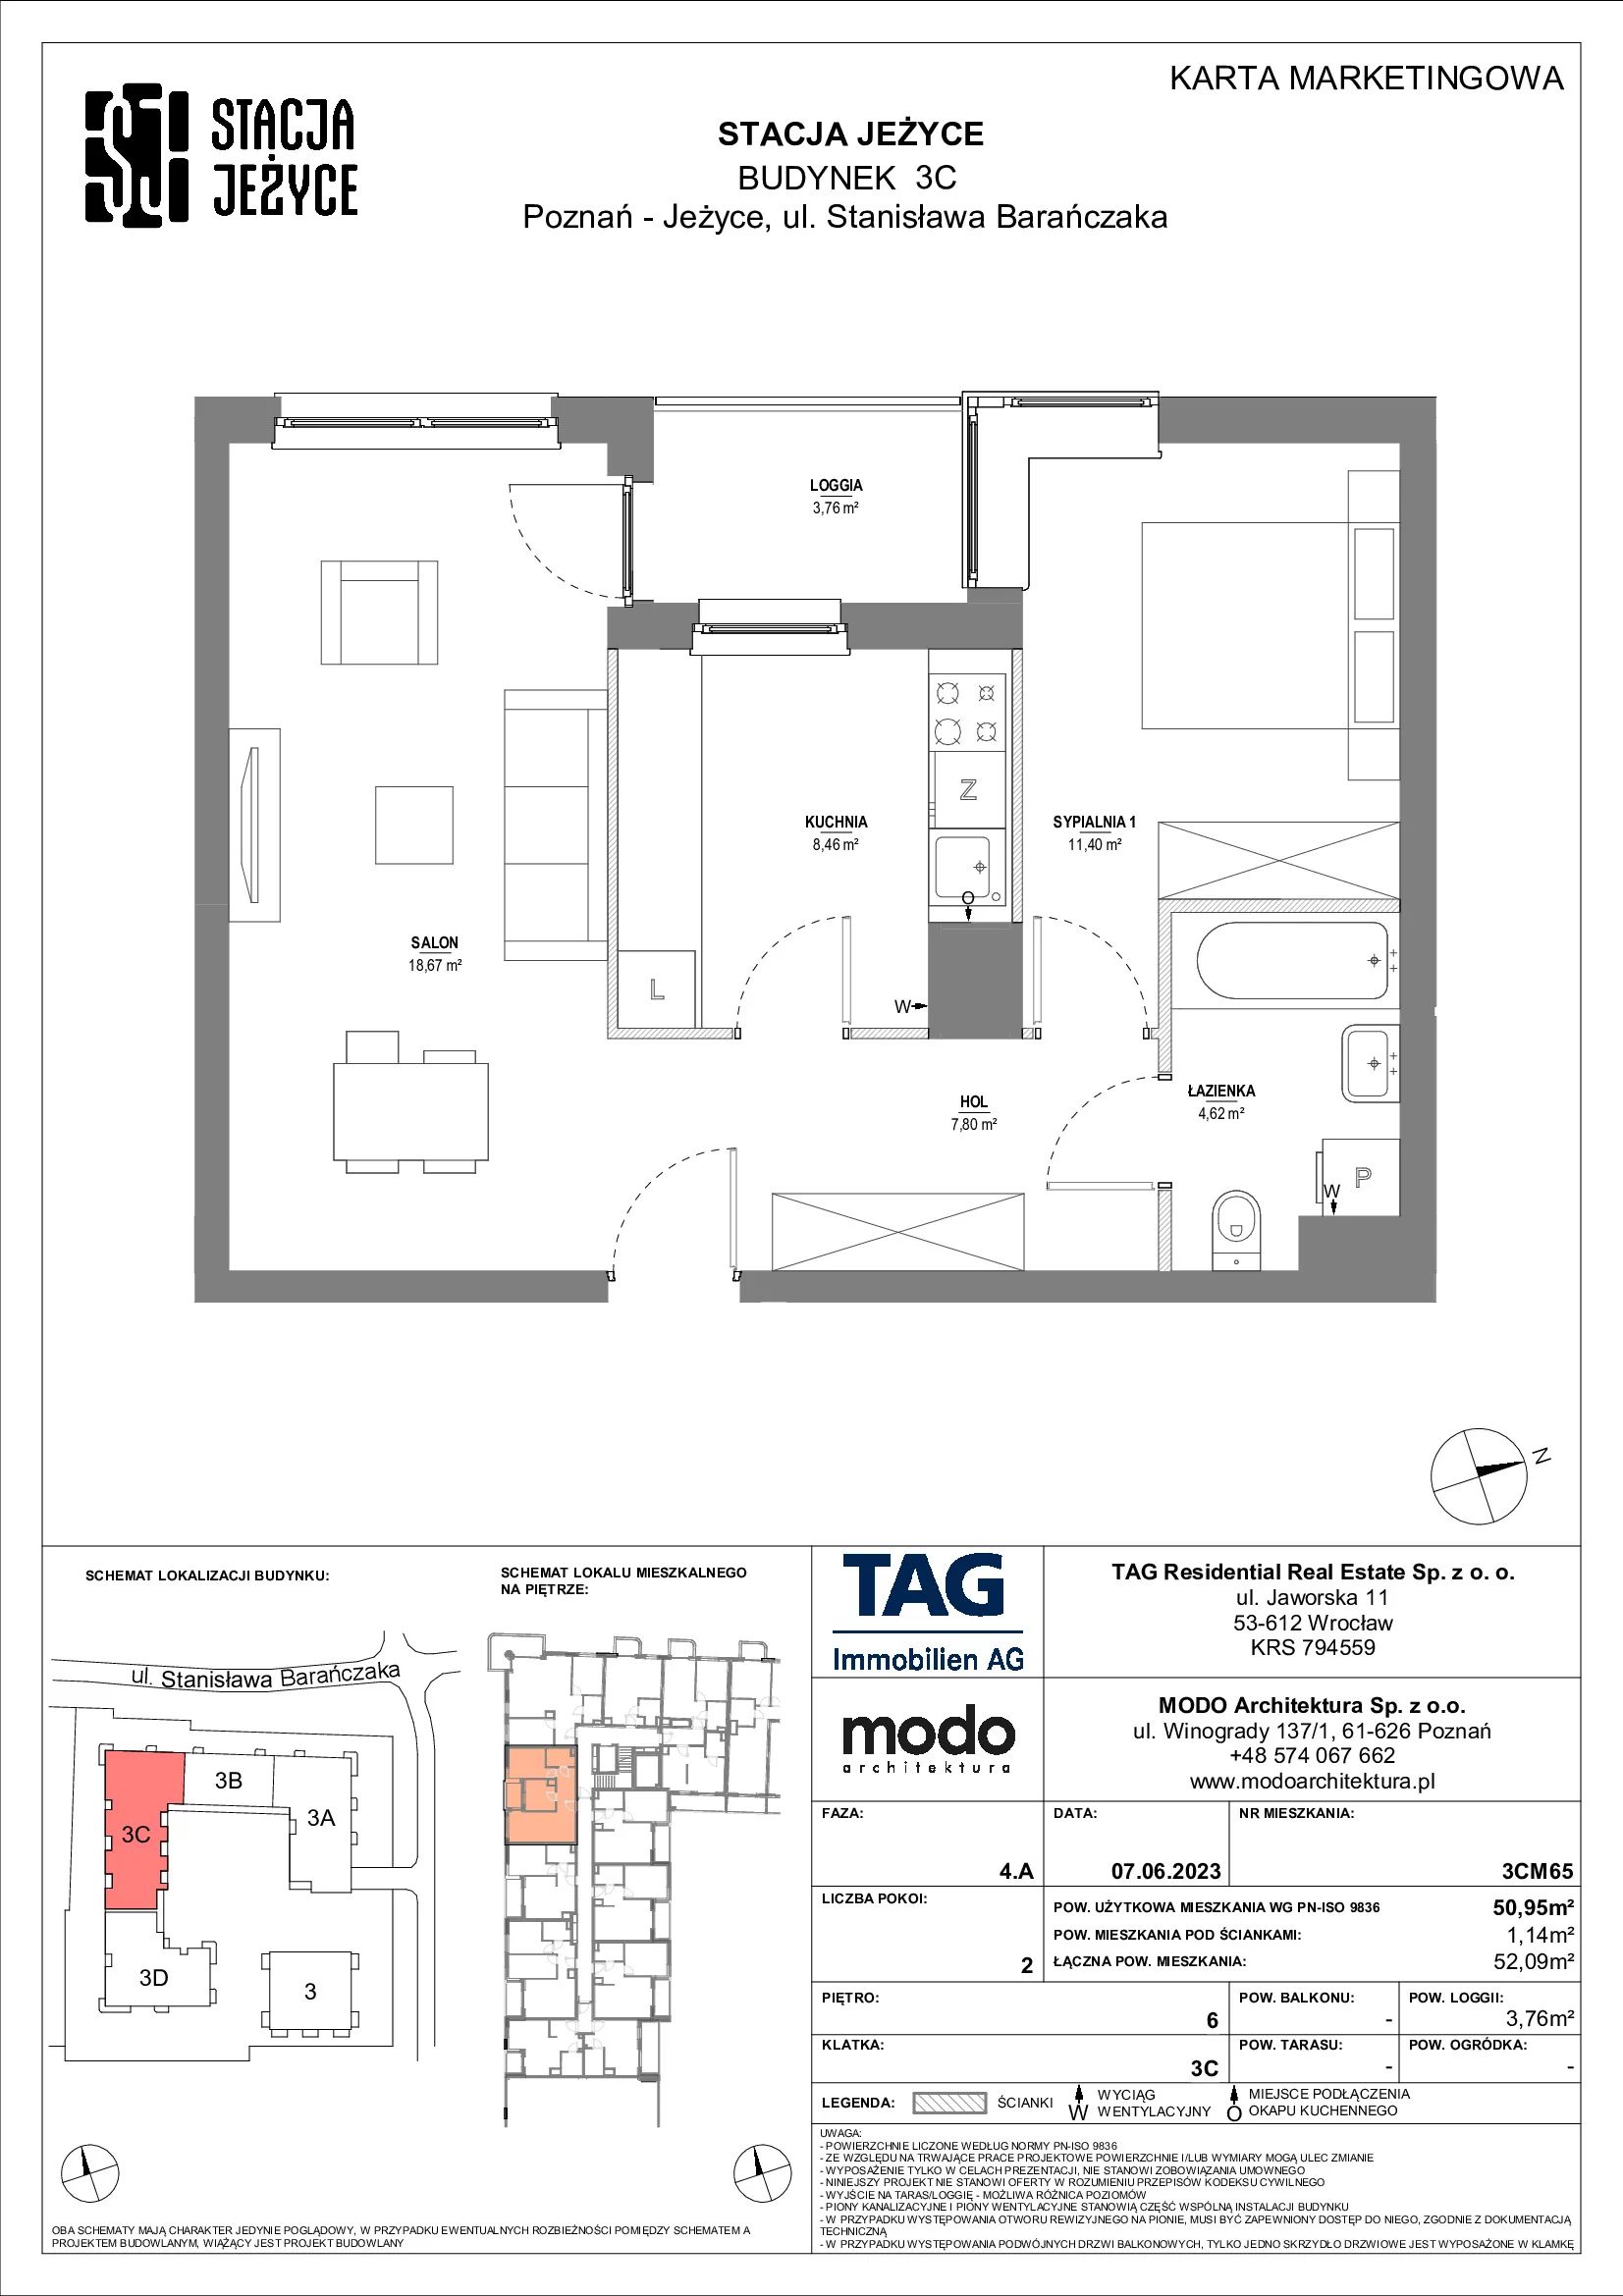 Mieszkanie 50,95 m², piętro 6, oferta nr 3CM65, Stacja Jeżyce, Poznań, Jeżyce, Jeżyce, ul. Stanisława Barańczaka 3